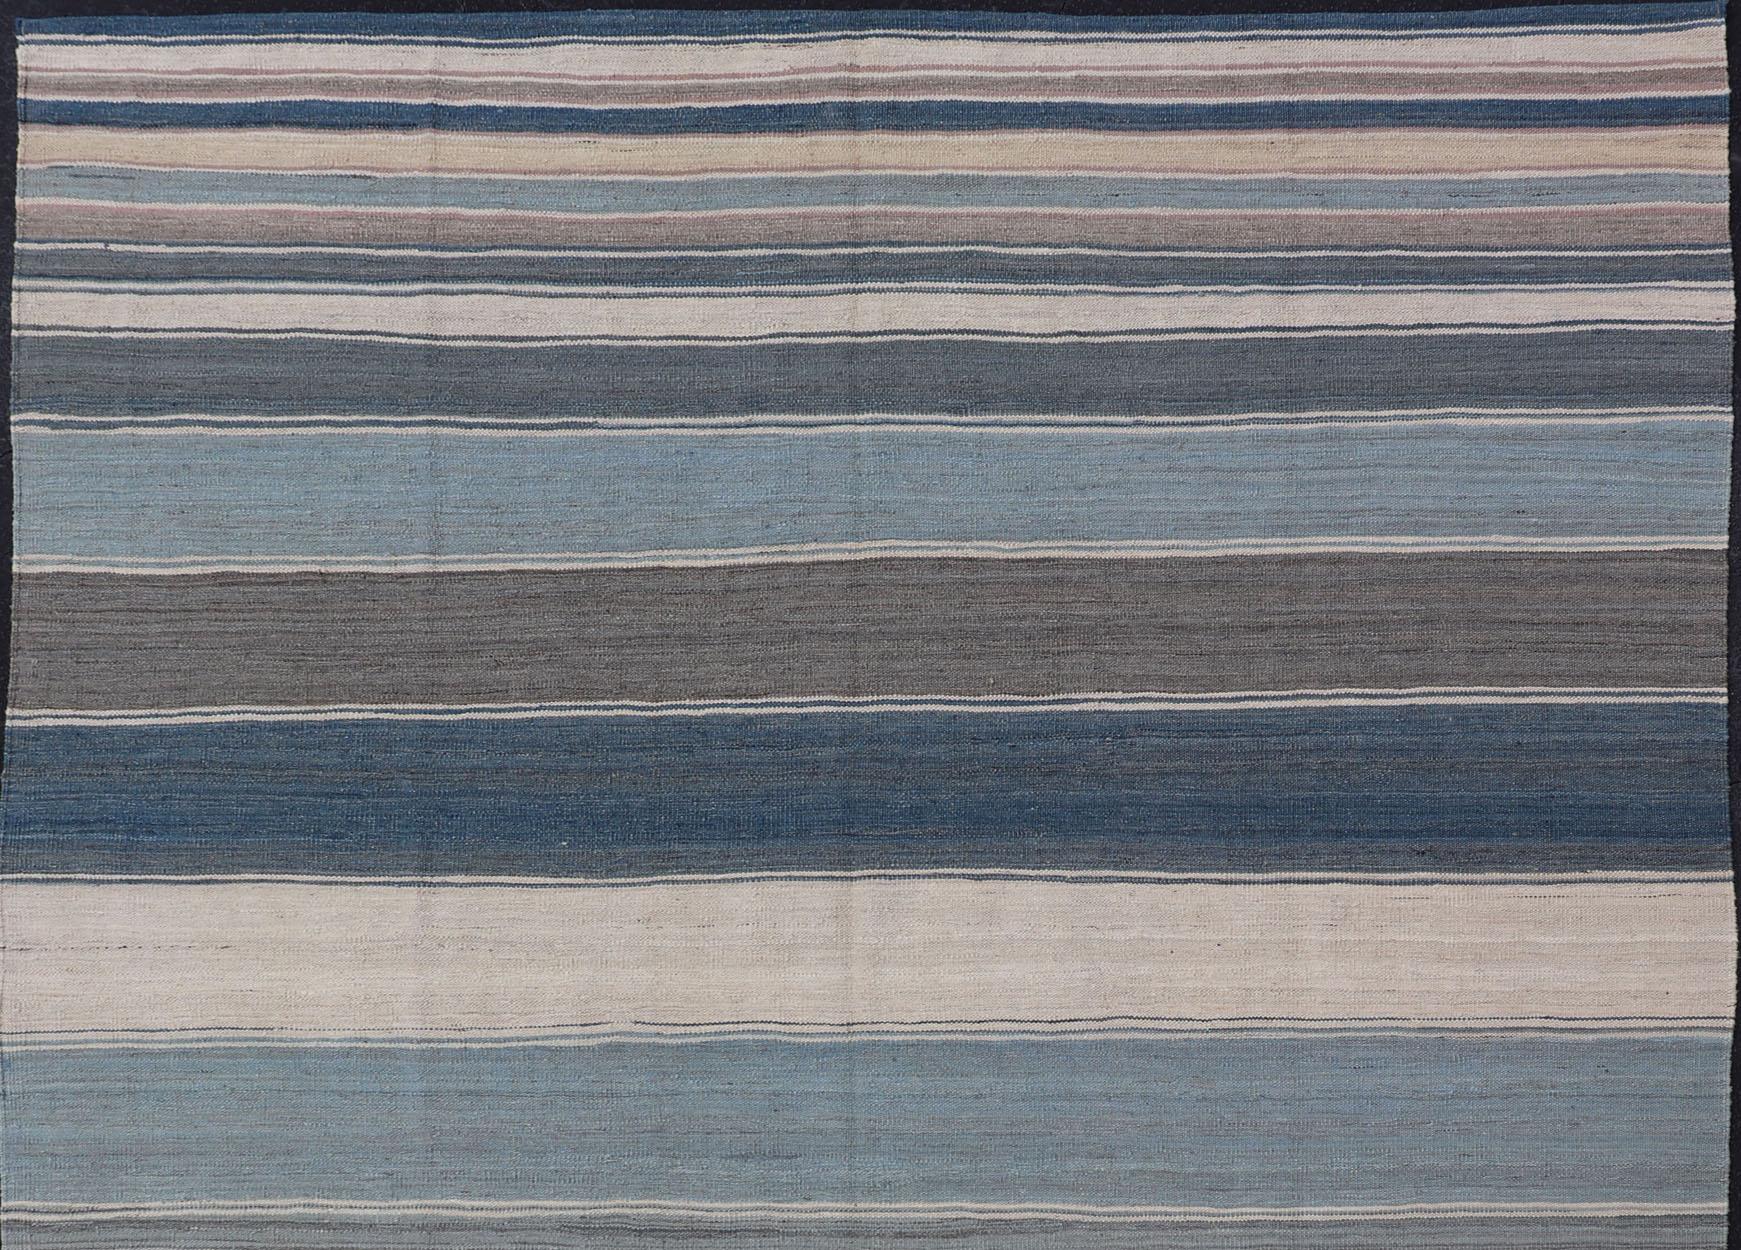 Flachgewebter Kilim-Teppich mit Streifen mit modernem Design in Blau-, Grau-, Braun- und Cremetönen, Keivan Woven Arts / Teppich AFG-156, Herkunftsland / Typ: Afghanistan / Kilim, Streifenkilim, Streifendesign 

Dieses schöne Stück zeichnet sich